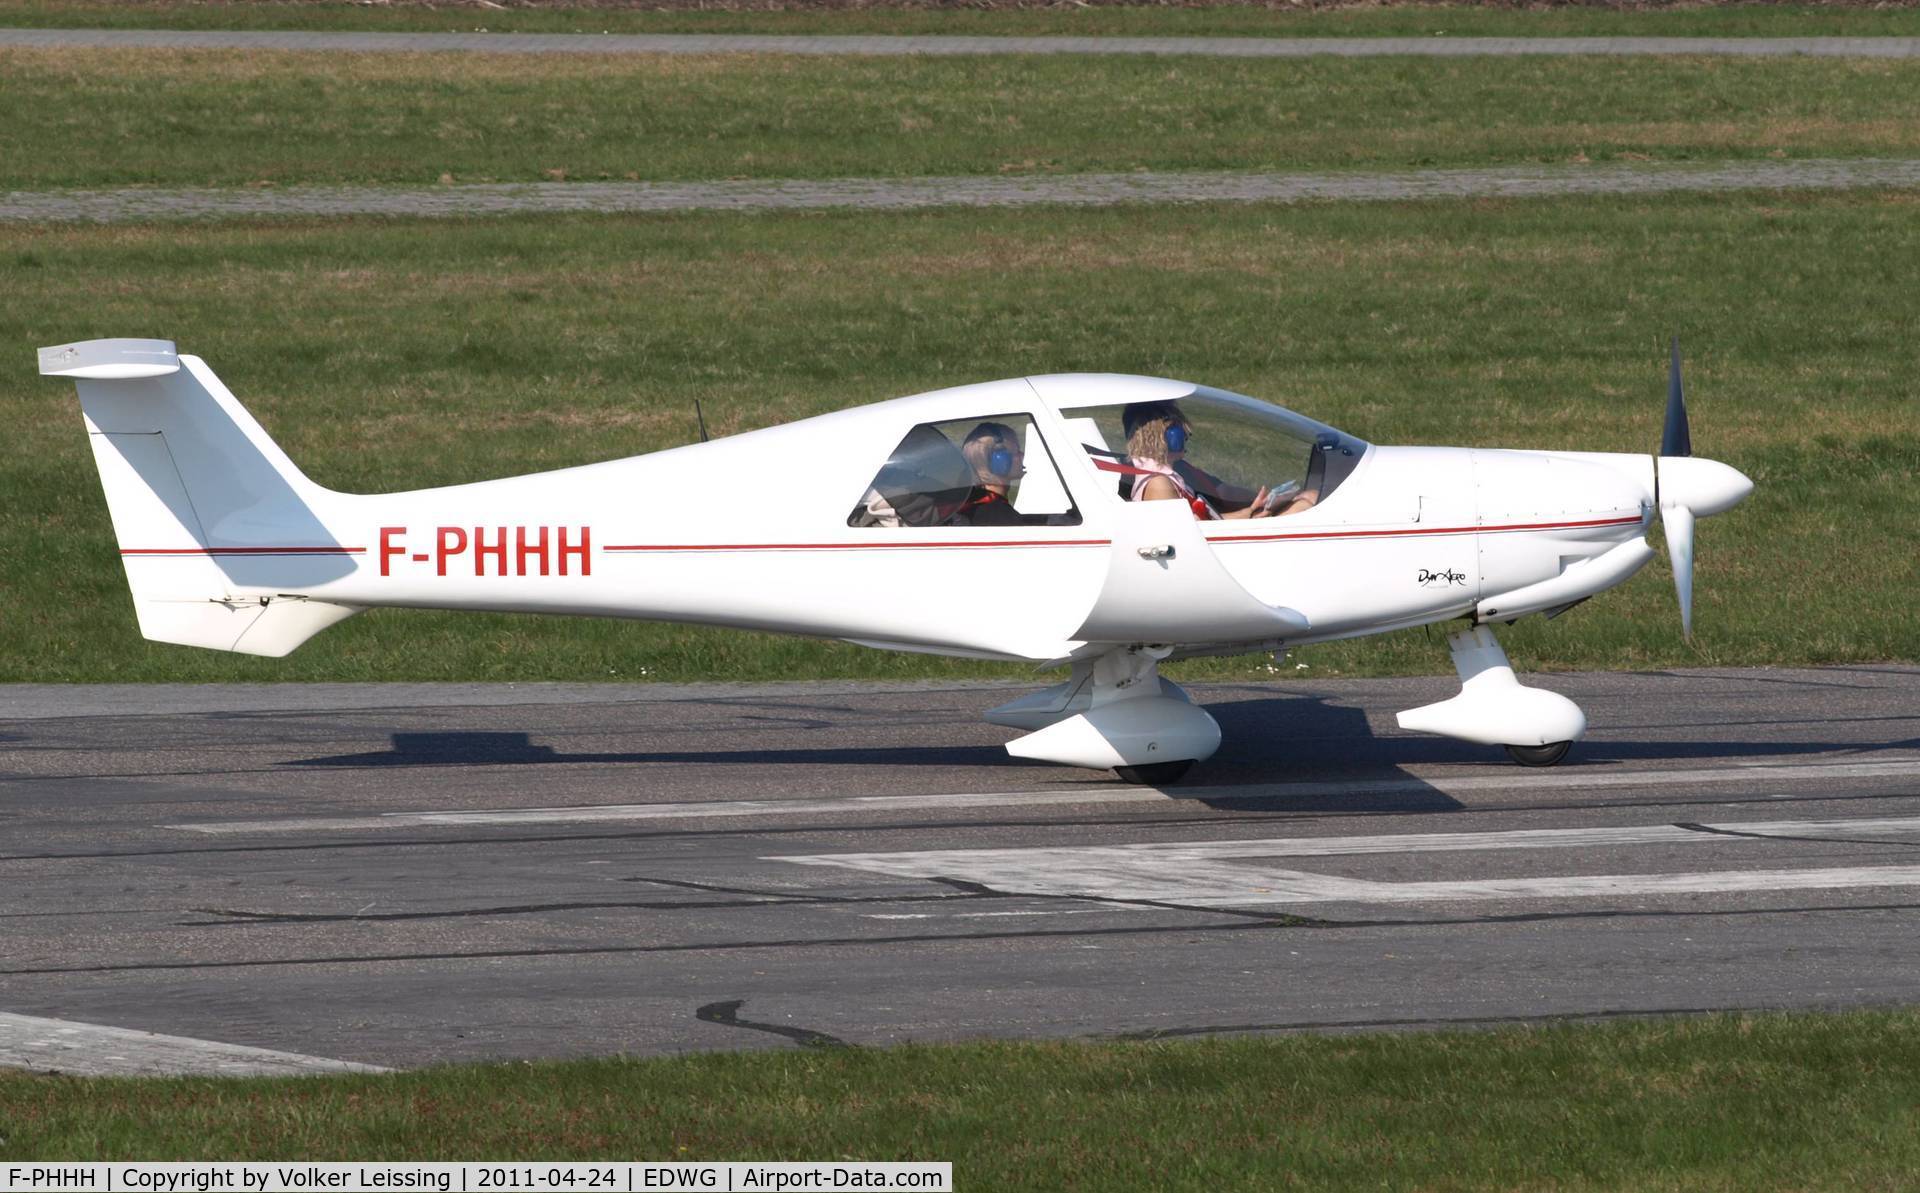 F-PHHH, 2003 Dyn'Aero MCR-4S 2002 C/N 19, line up